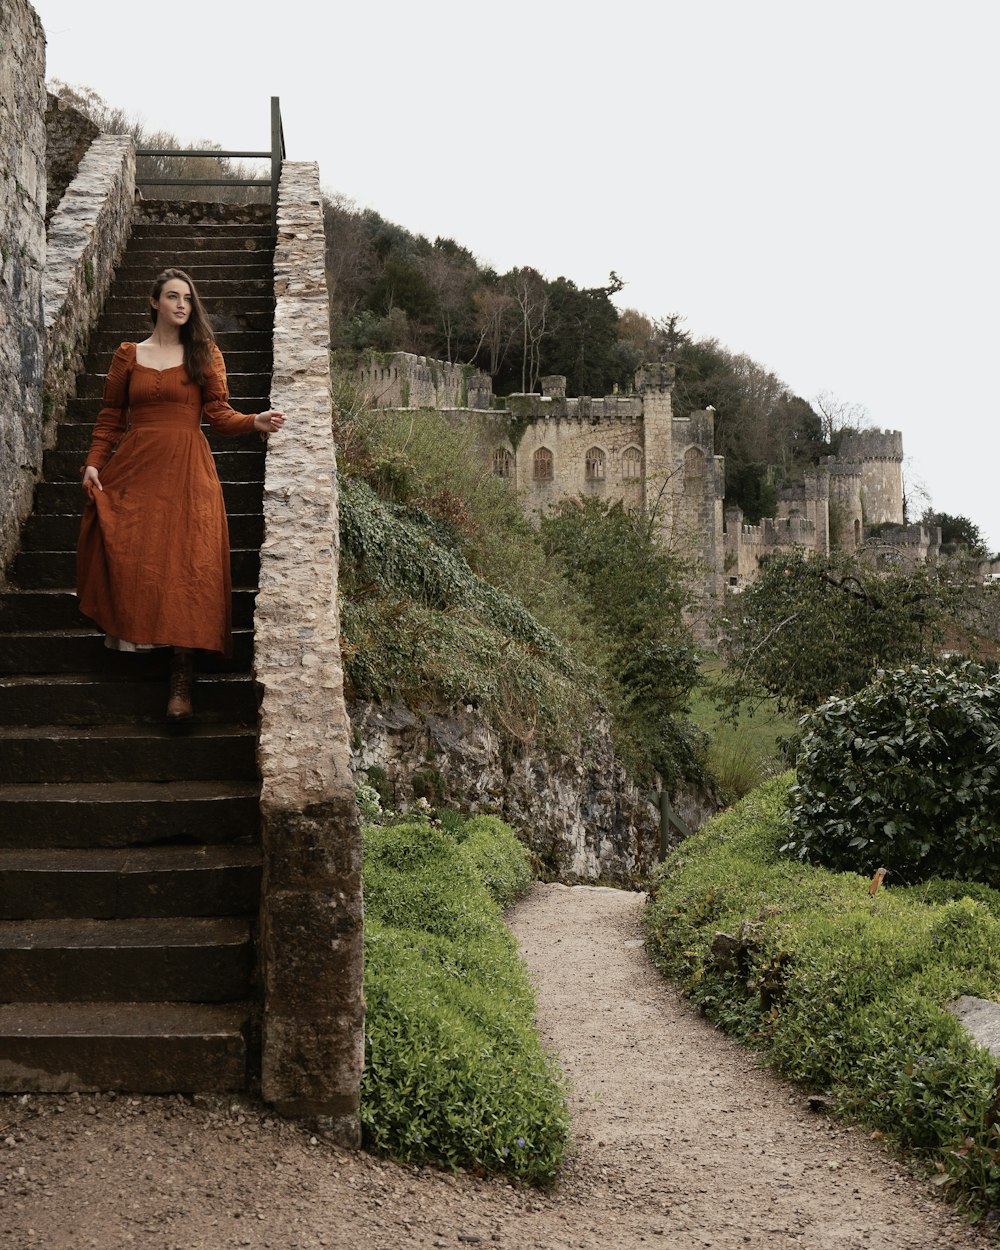 Eine Frau in einem orangefarbenen Kleid, die auf einer Treppe steht